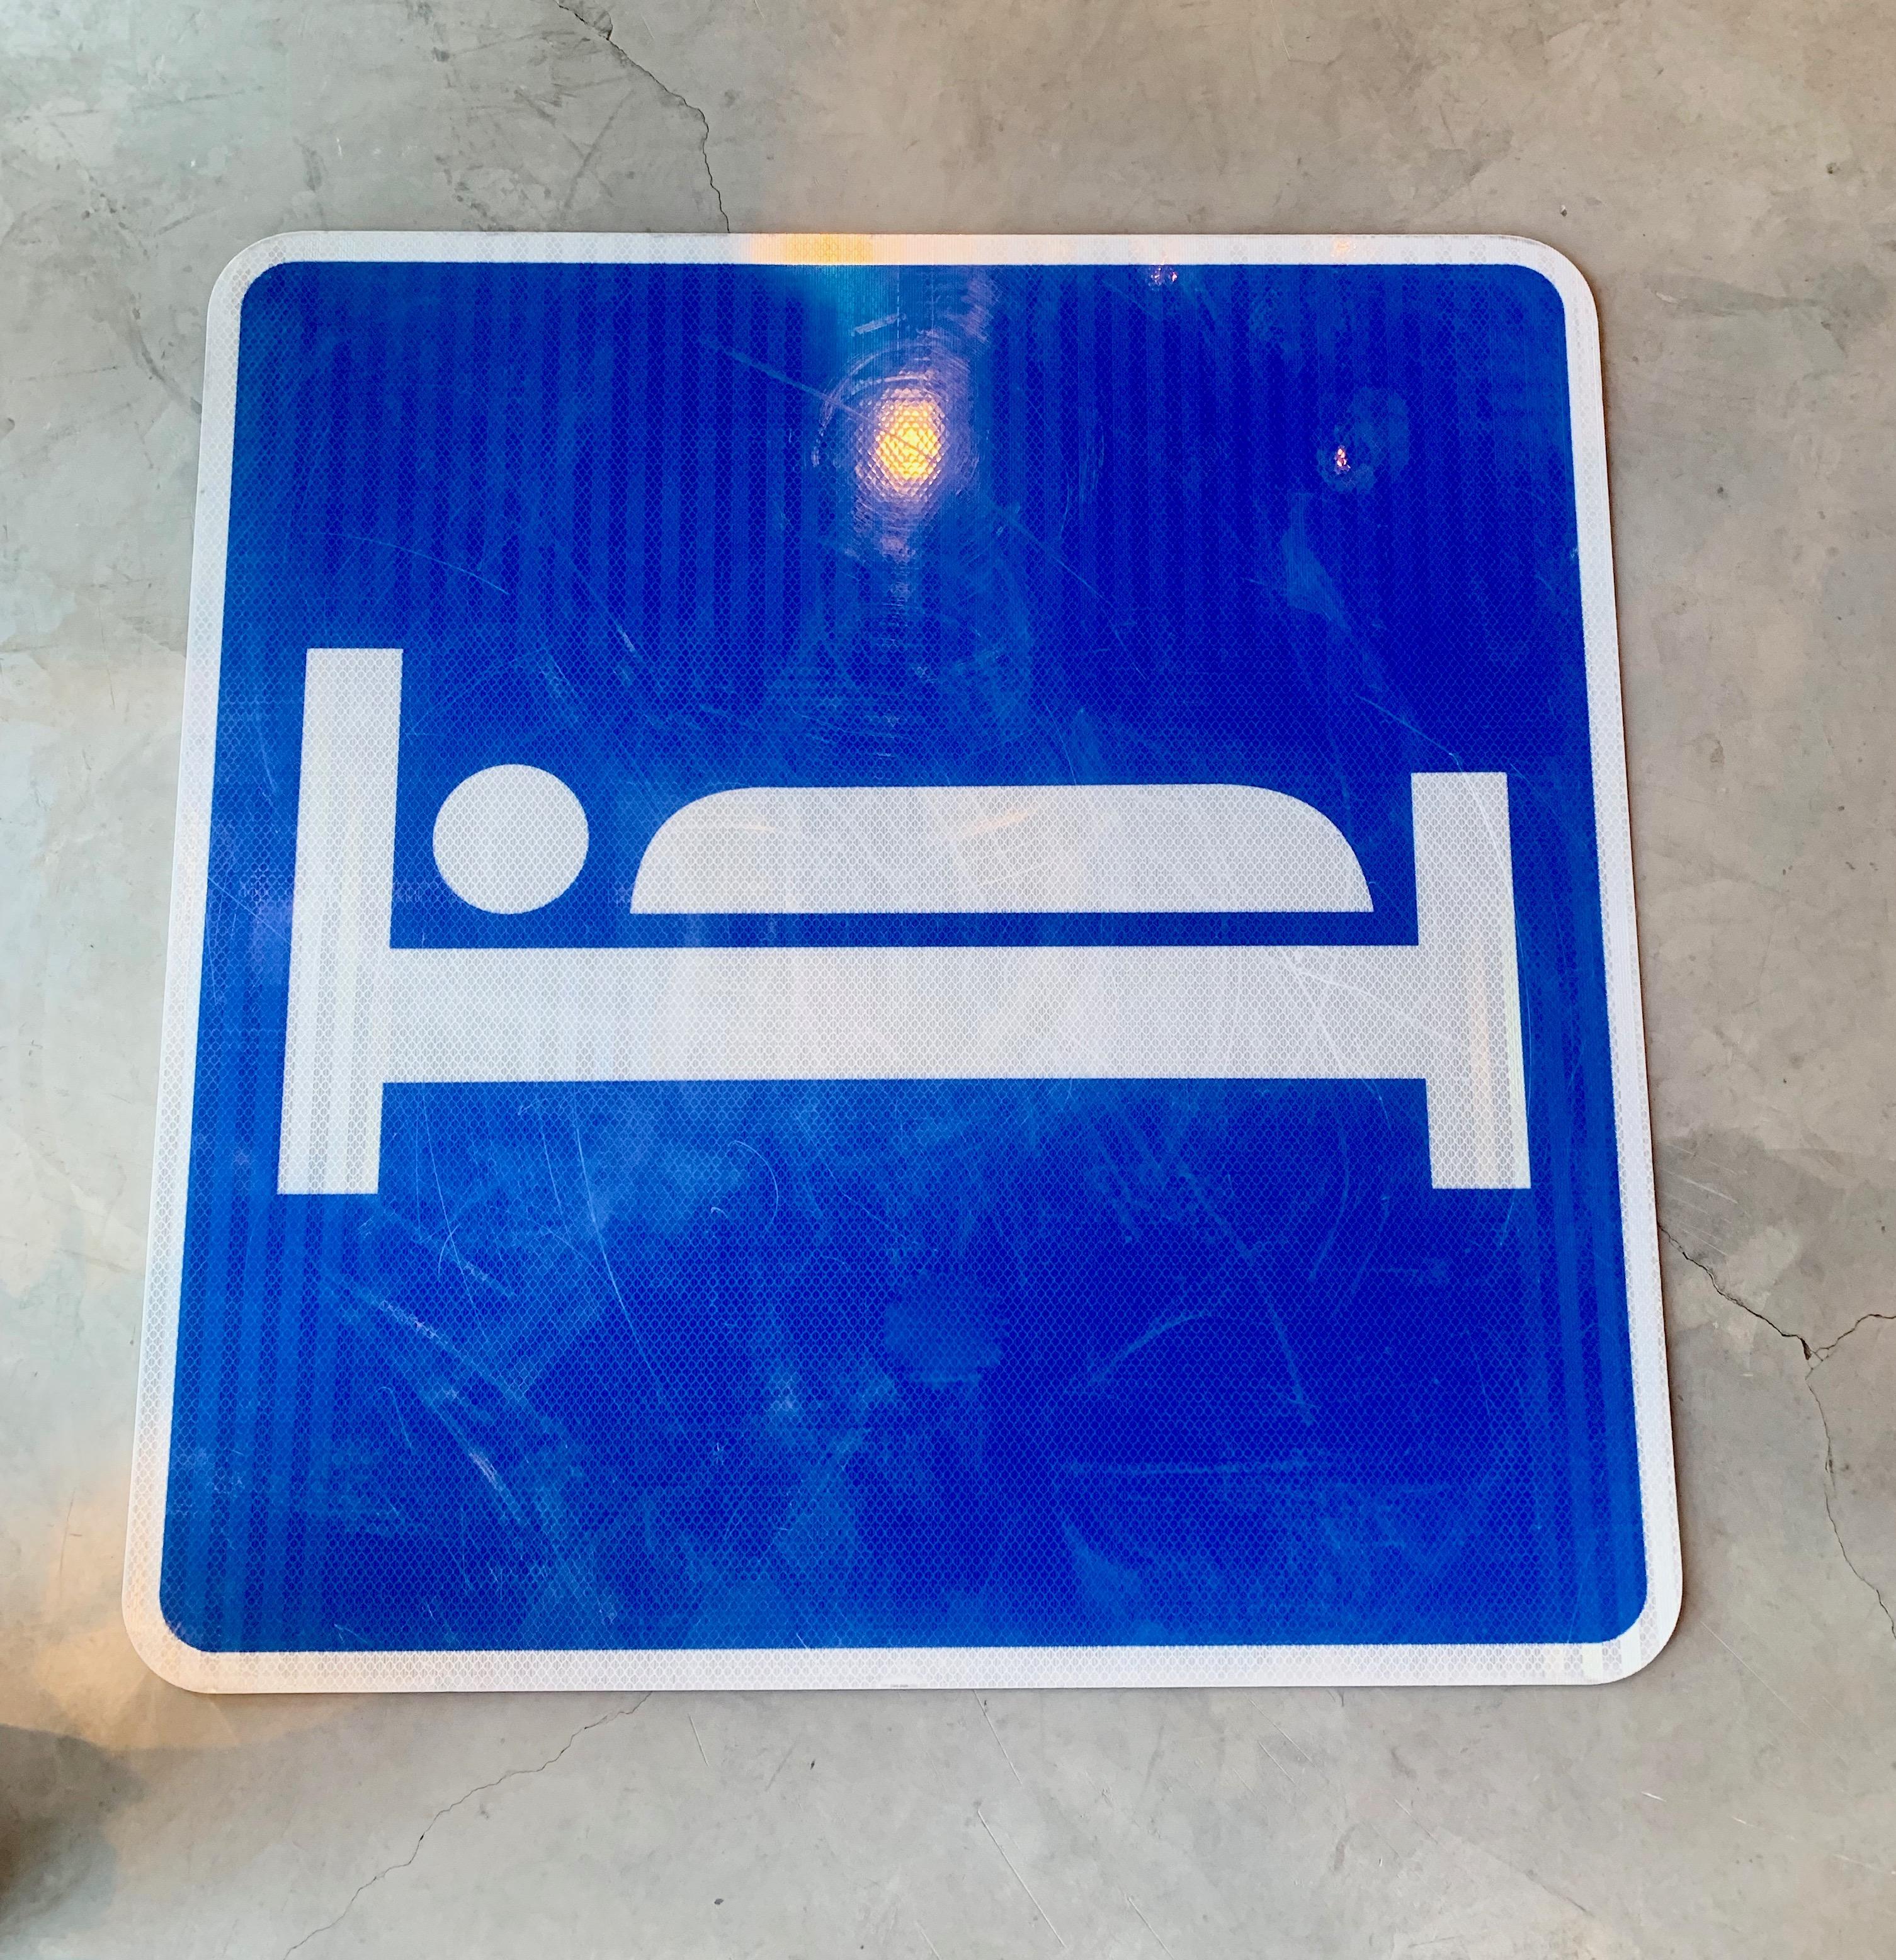 Cooles Vintage-Autobahnschild aus kobaltblauem, reflektierendem Metall. Zeigt eine Person, die im Bett schläft. Das Schild diente dazu, Autofahrer zu Hotels/Motels an der Straße zu leiten. Großes Format mit 30